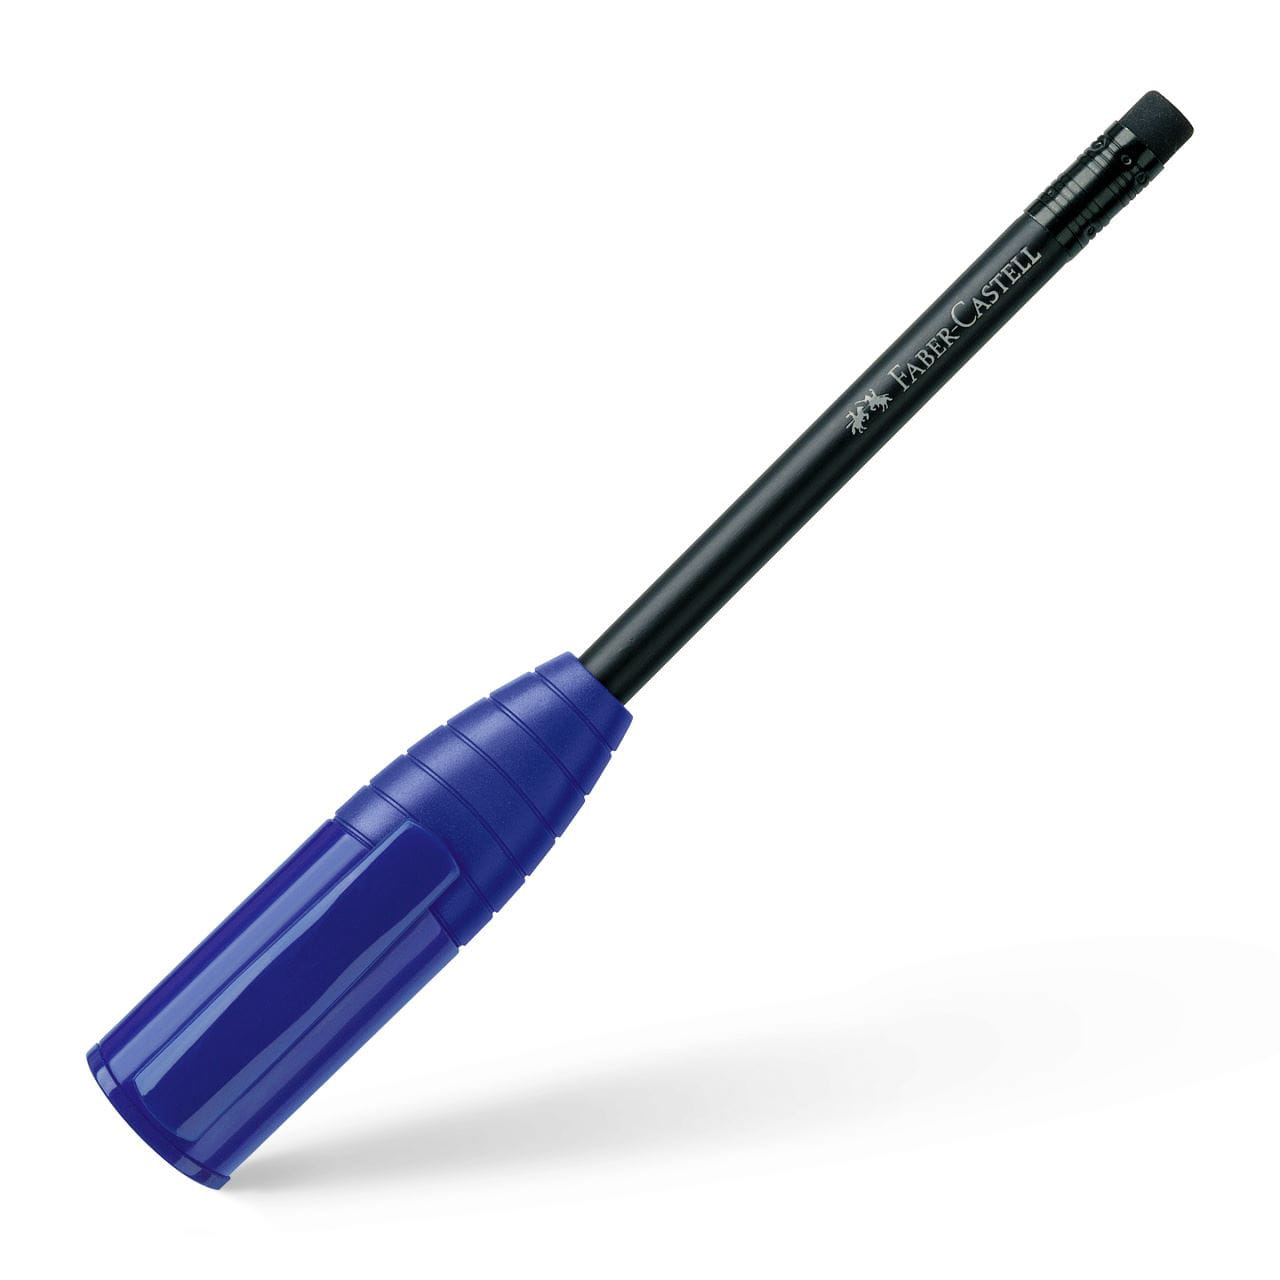 Faber-Castell - Lápiz Perfecto III con tapón y afila incorporado, azul